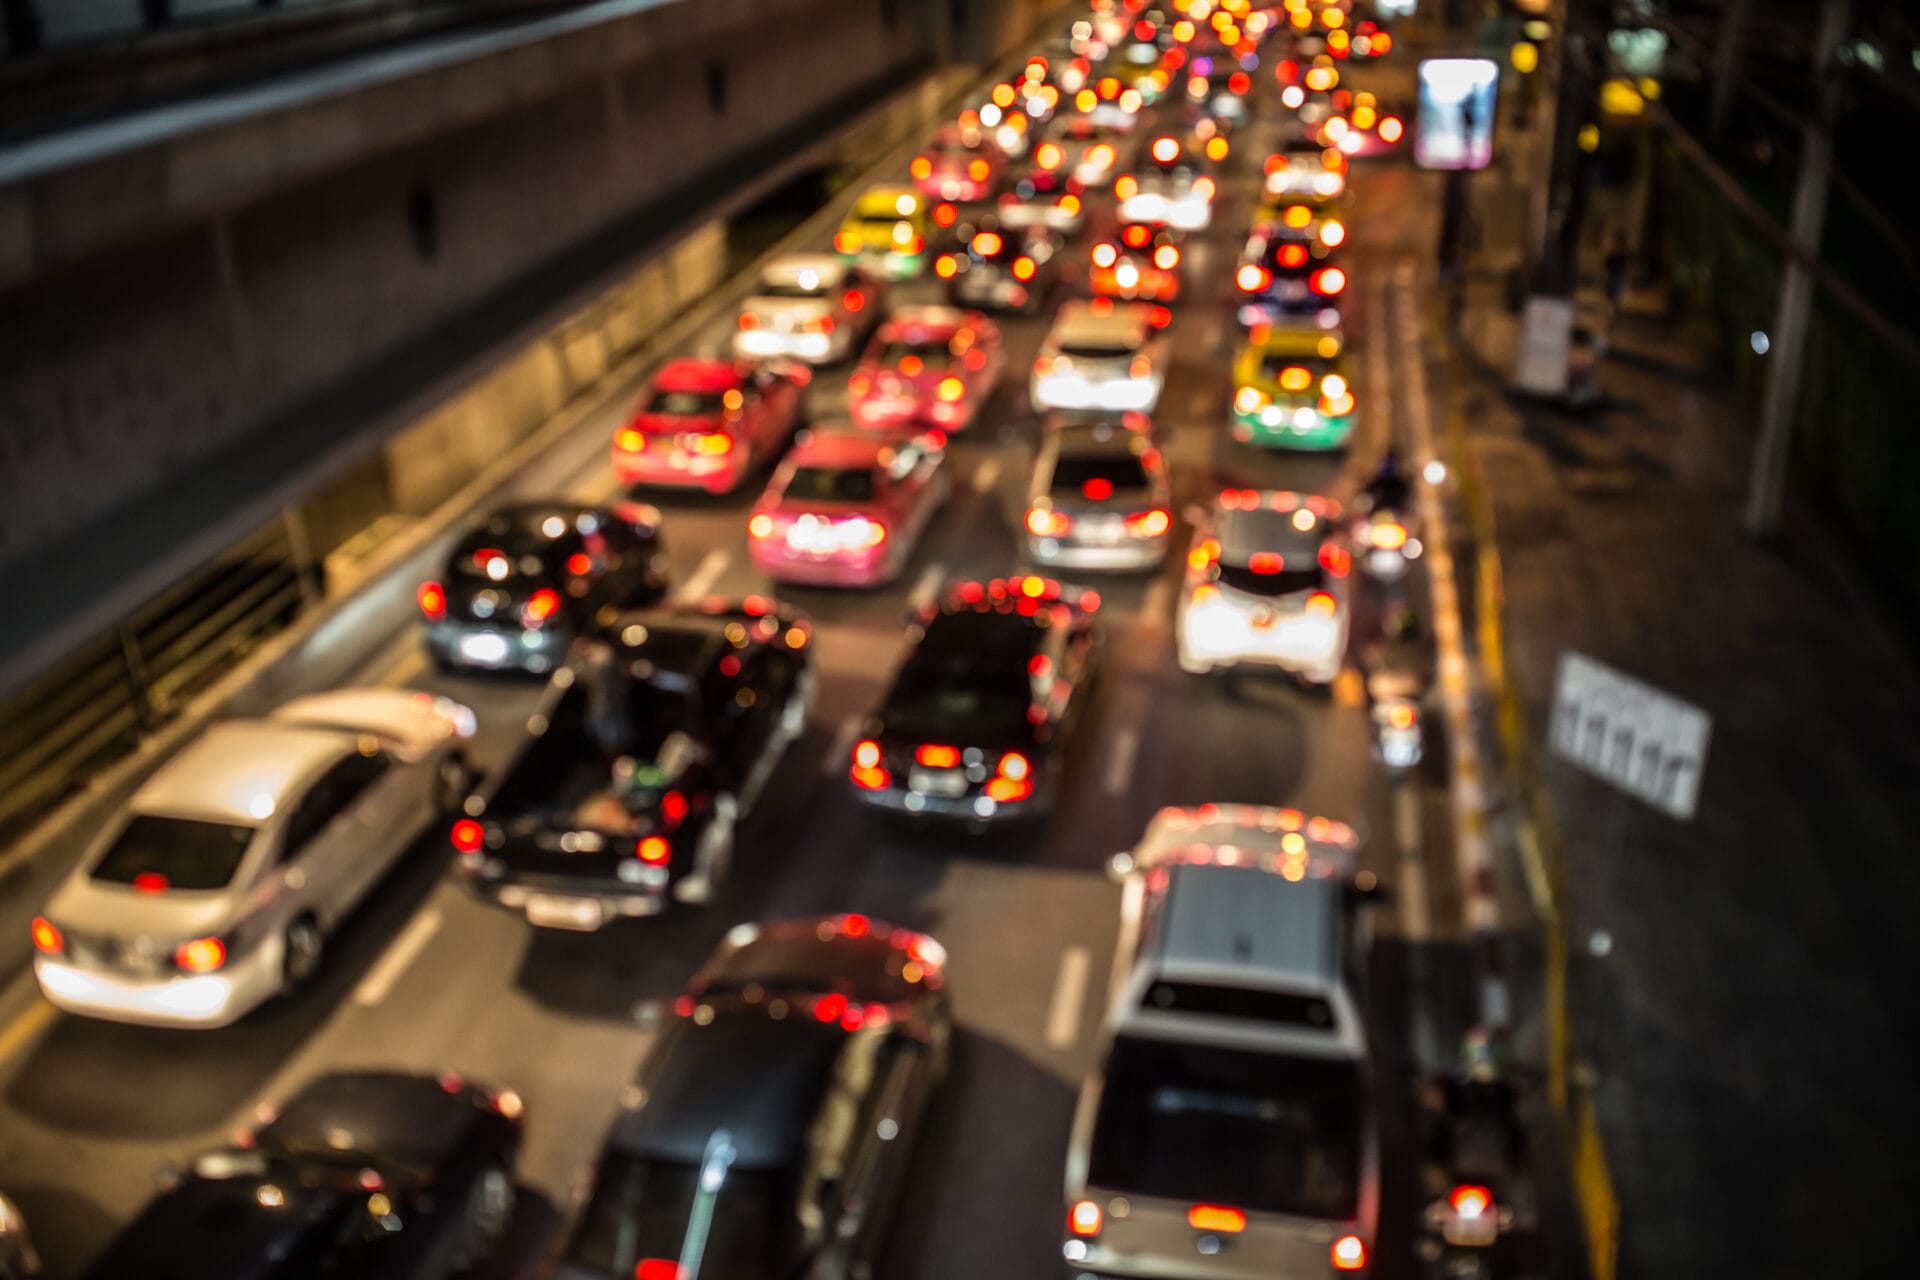 Descripción: Imagen borrosa de tráfico en una ciudad sostenible por la noche mostrando múltiples autos con faros y luces traseras encendidas en una calle concurrida.